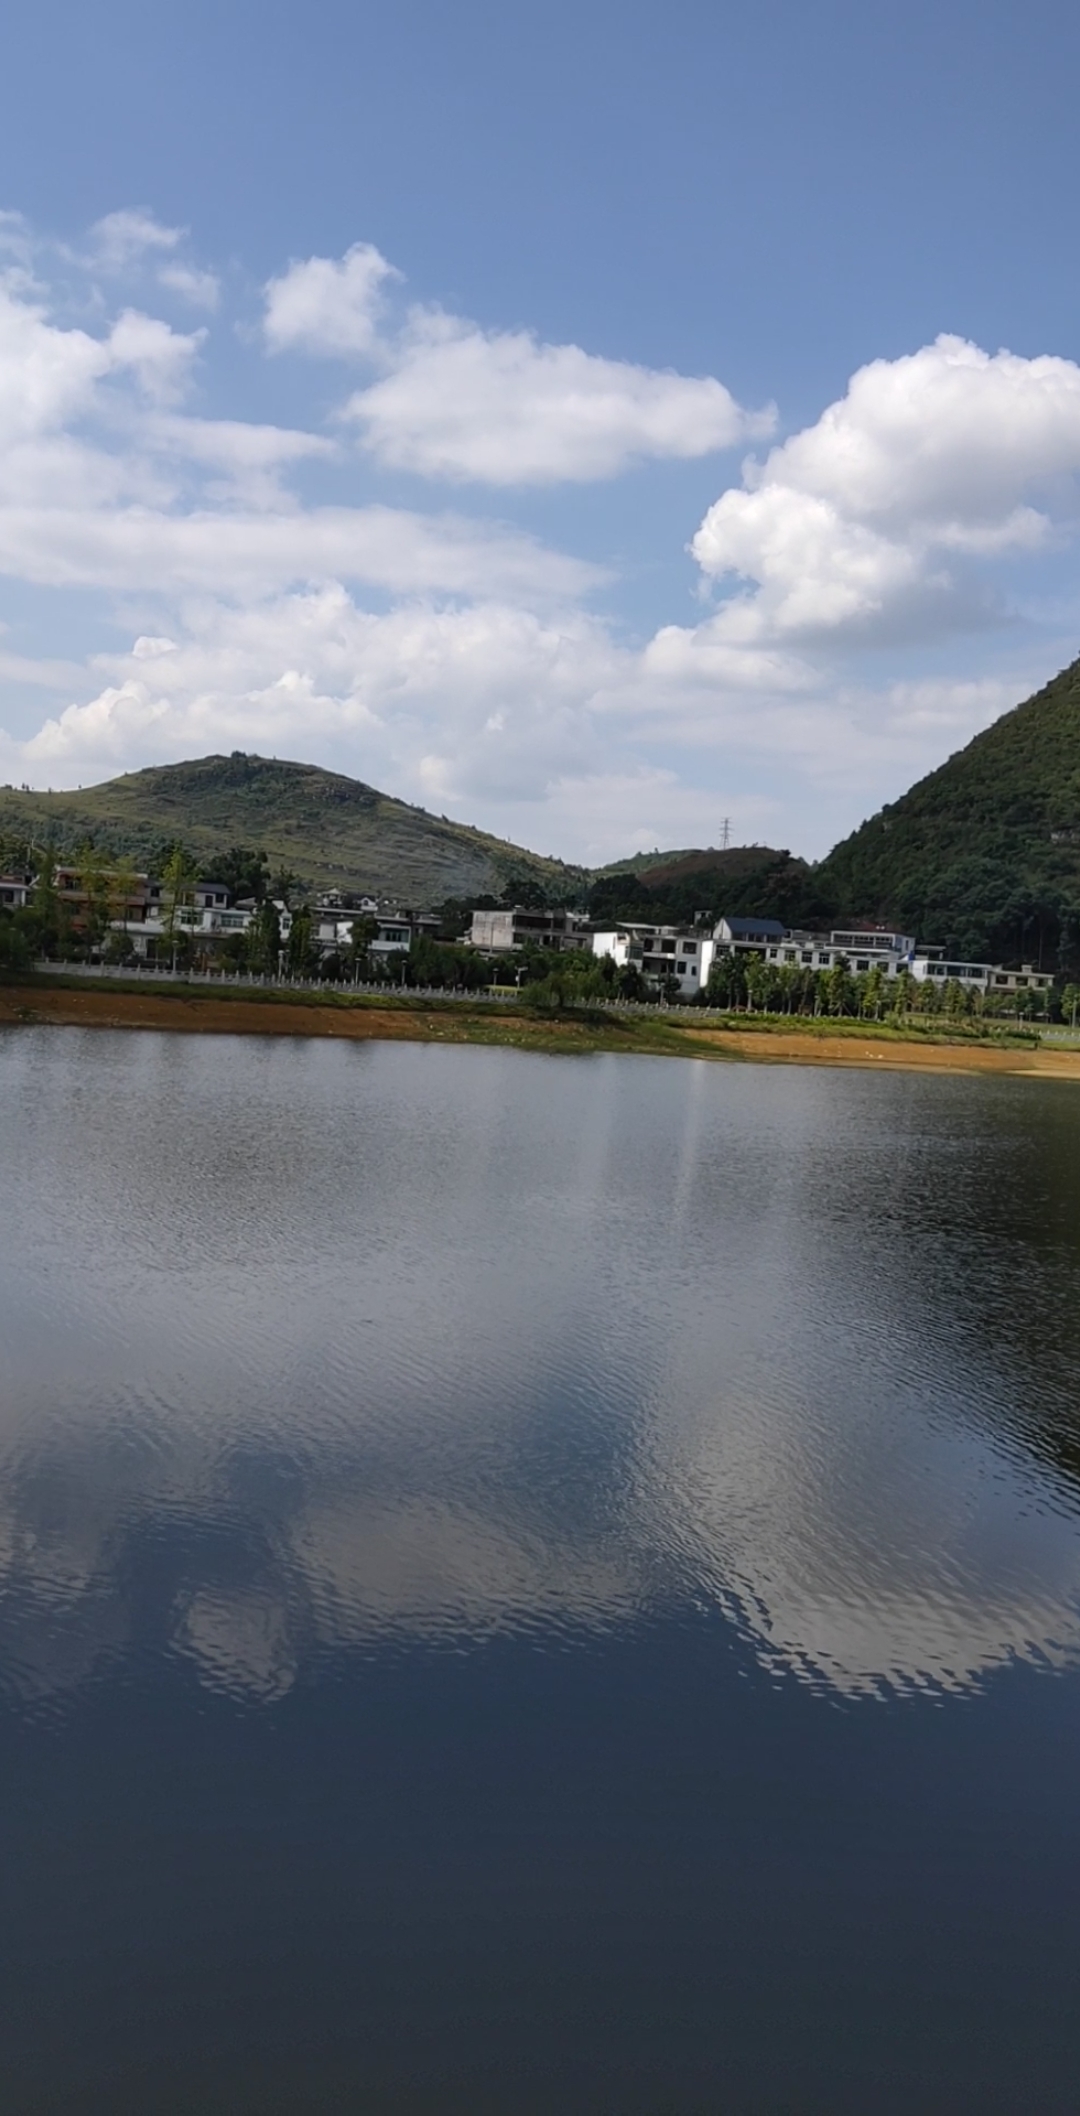 贵州镇宁红旗湖公园,风景不错哟,天气也不热刚刚好